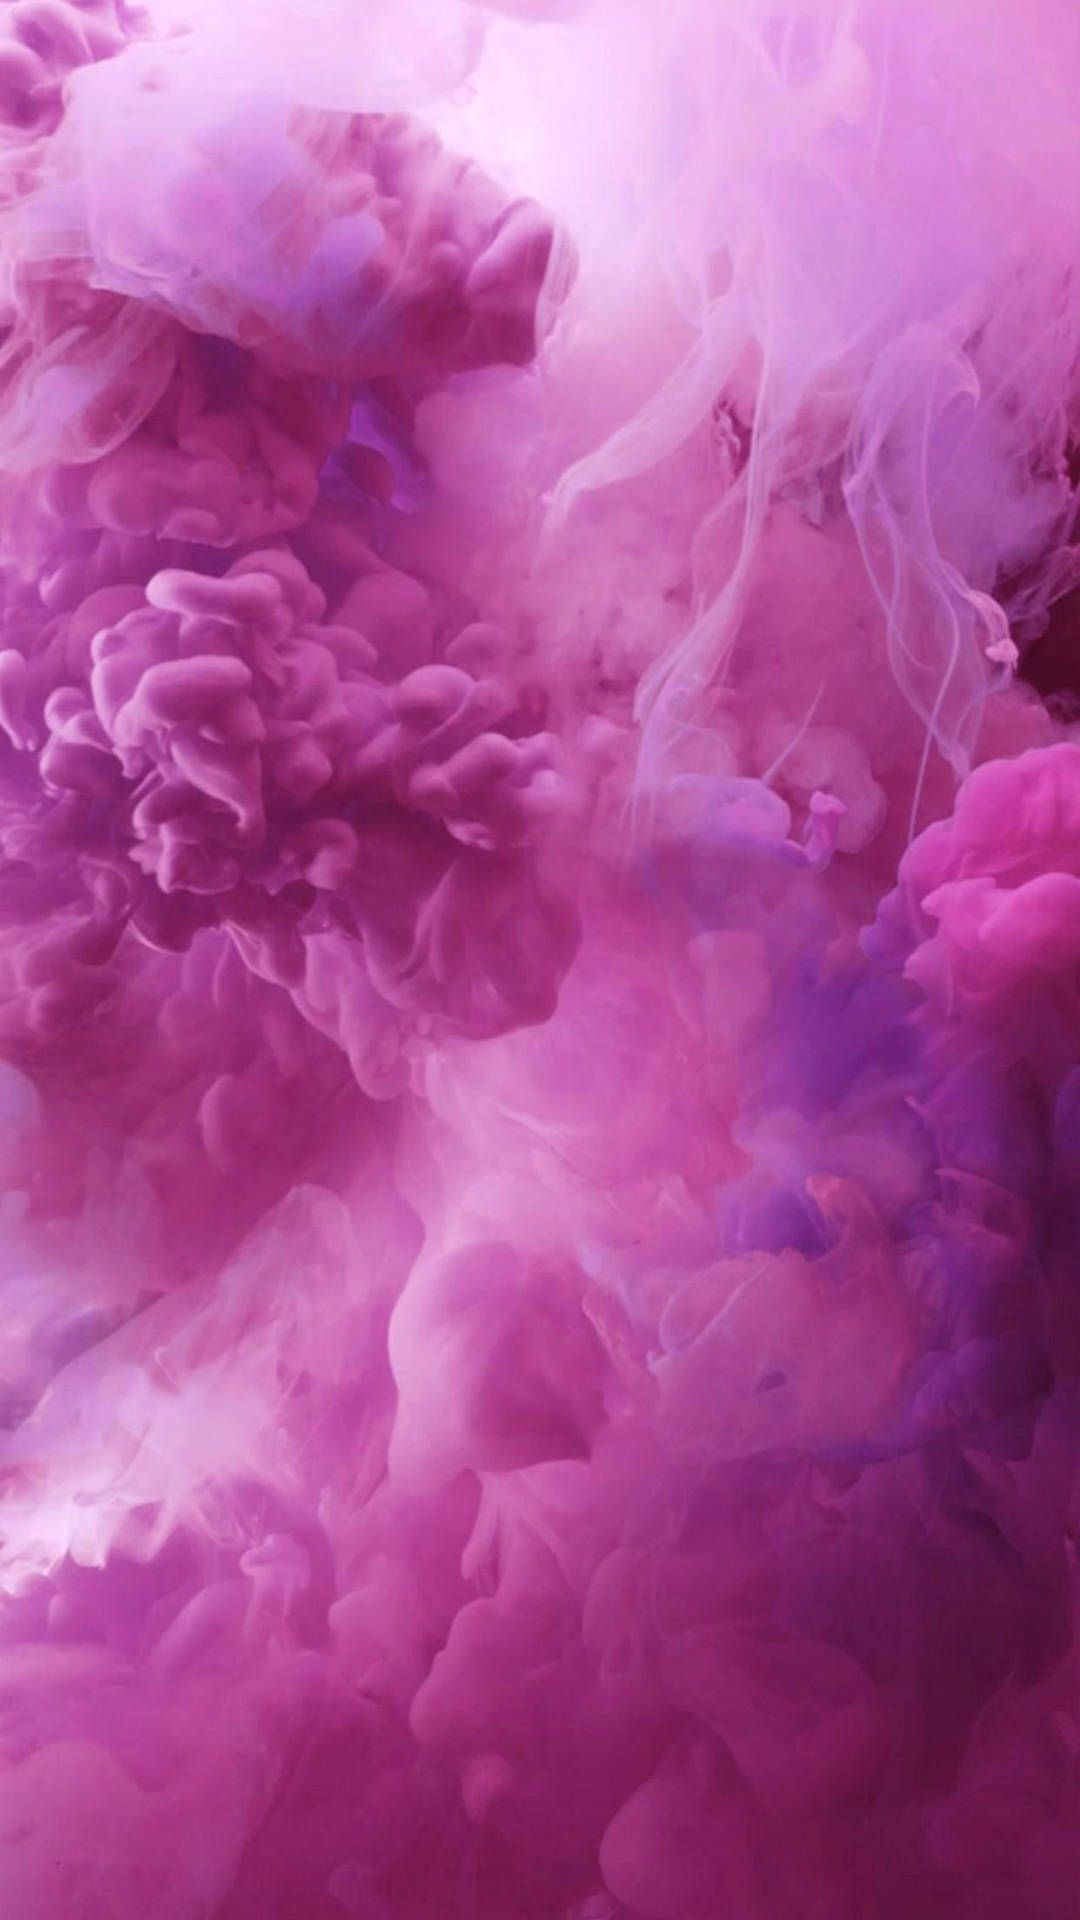  Pinke ästhetik Hintergrundbild 1080x1920. IPhone Pink Aesthetic Wallpaper KOSTENLOS